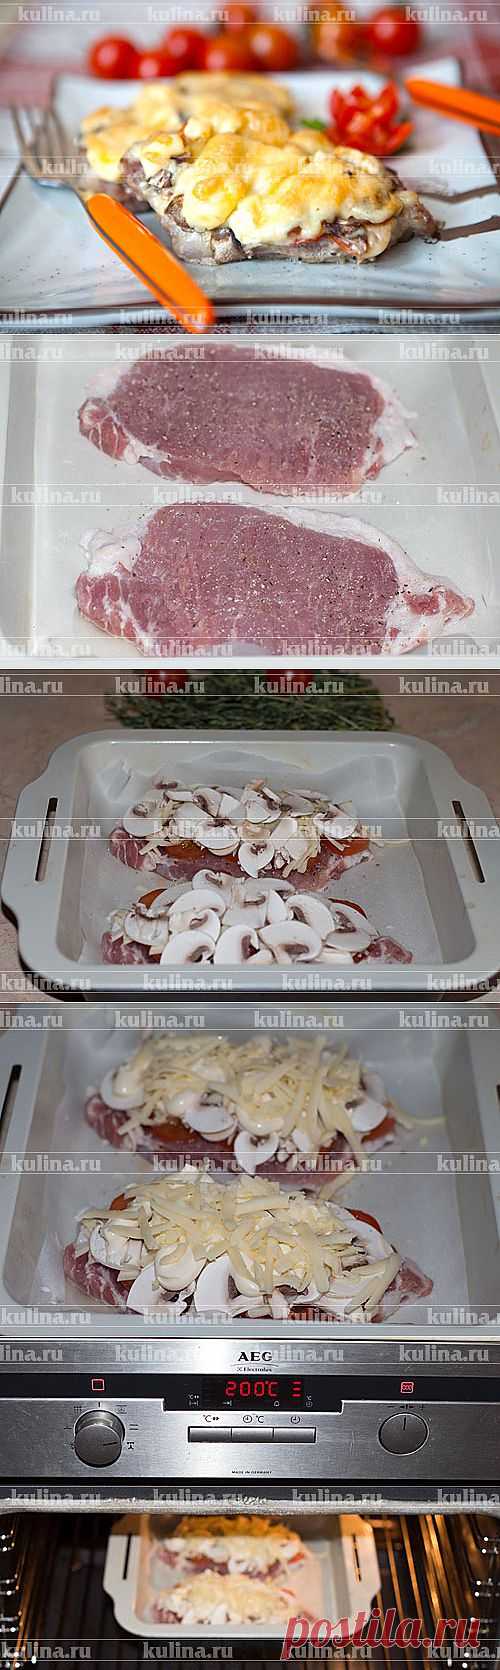 Мясо по-купечески – рецепт приготовления с фото от Kulina.Ru